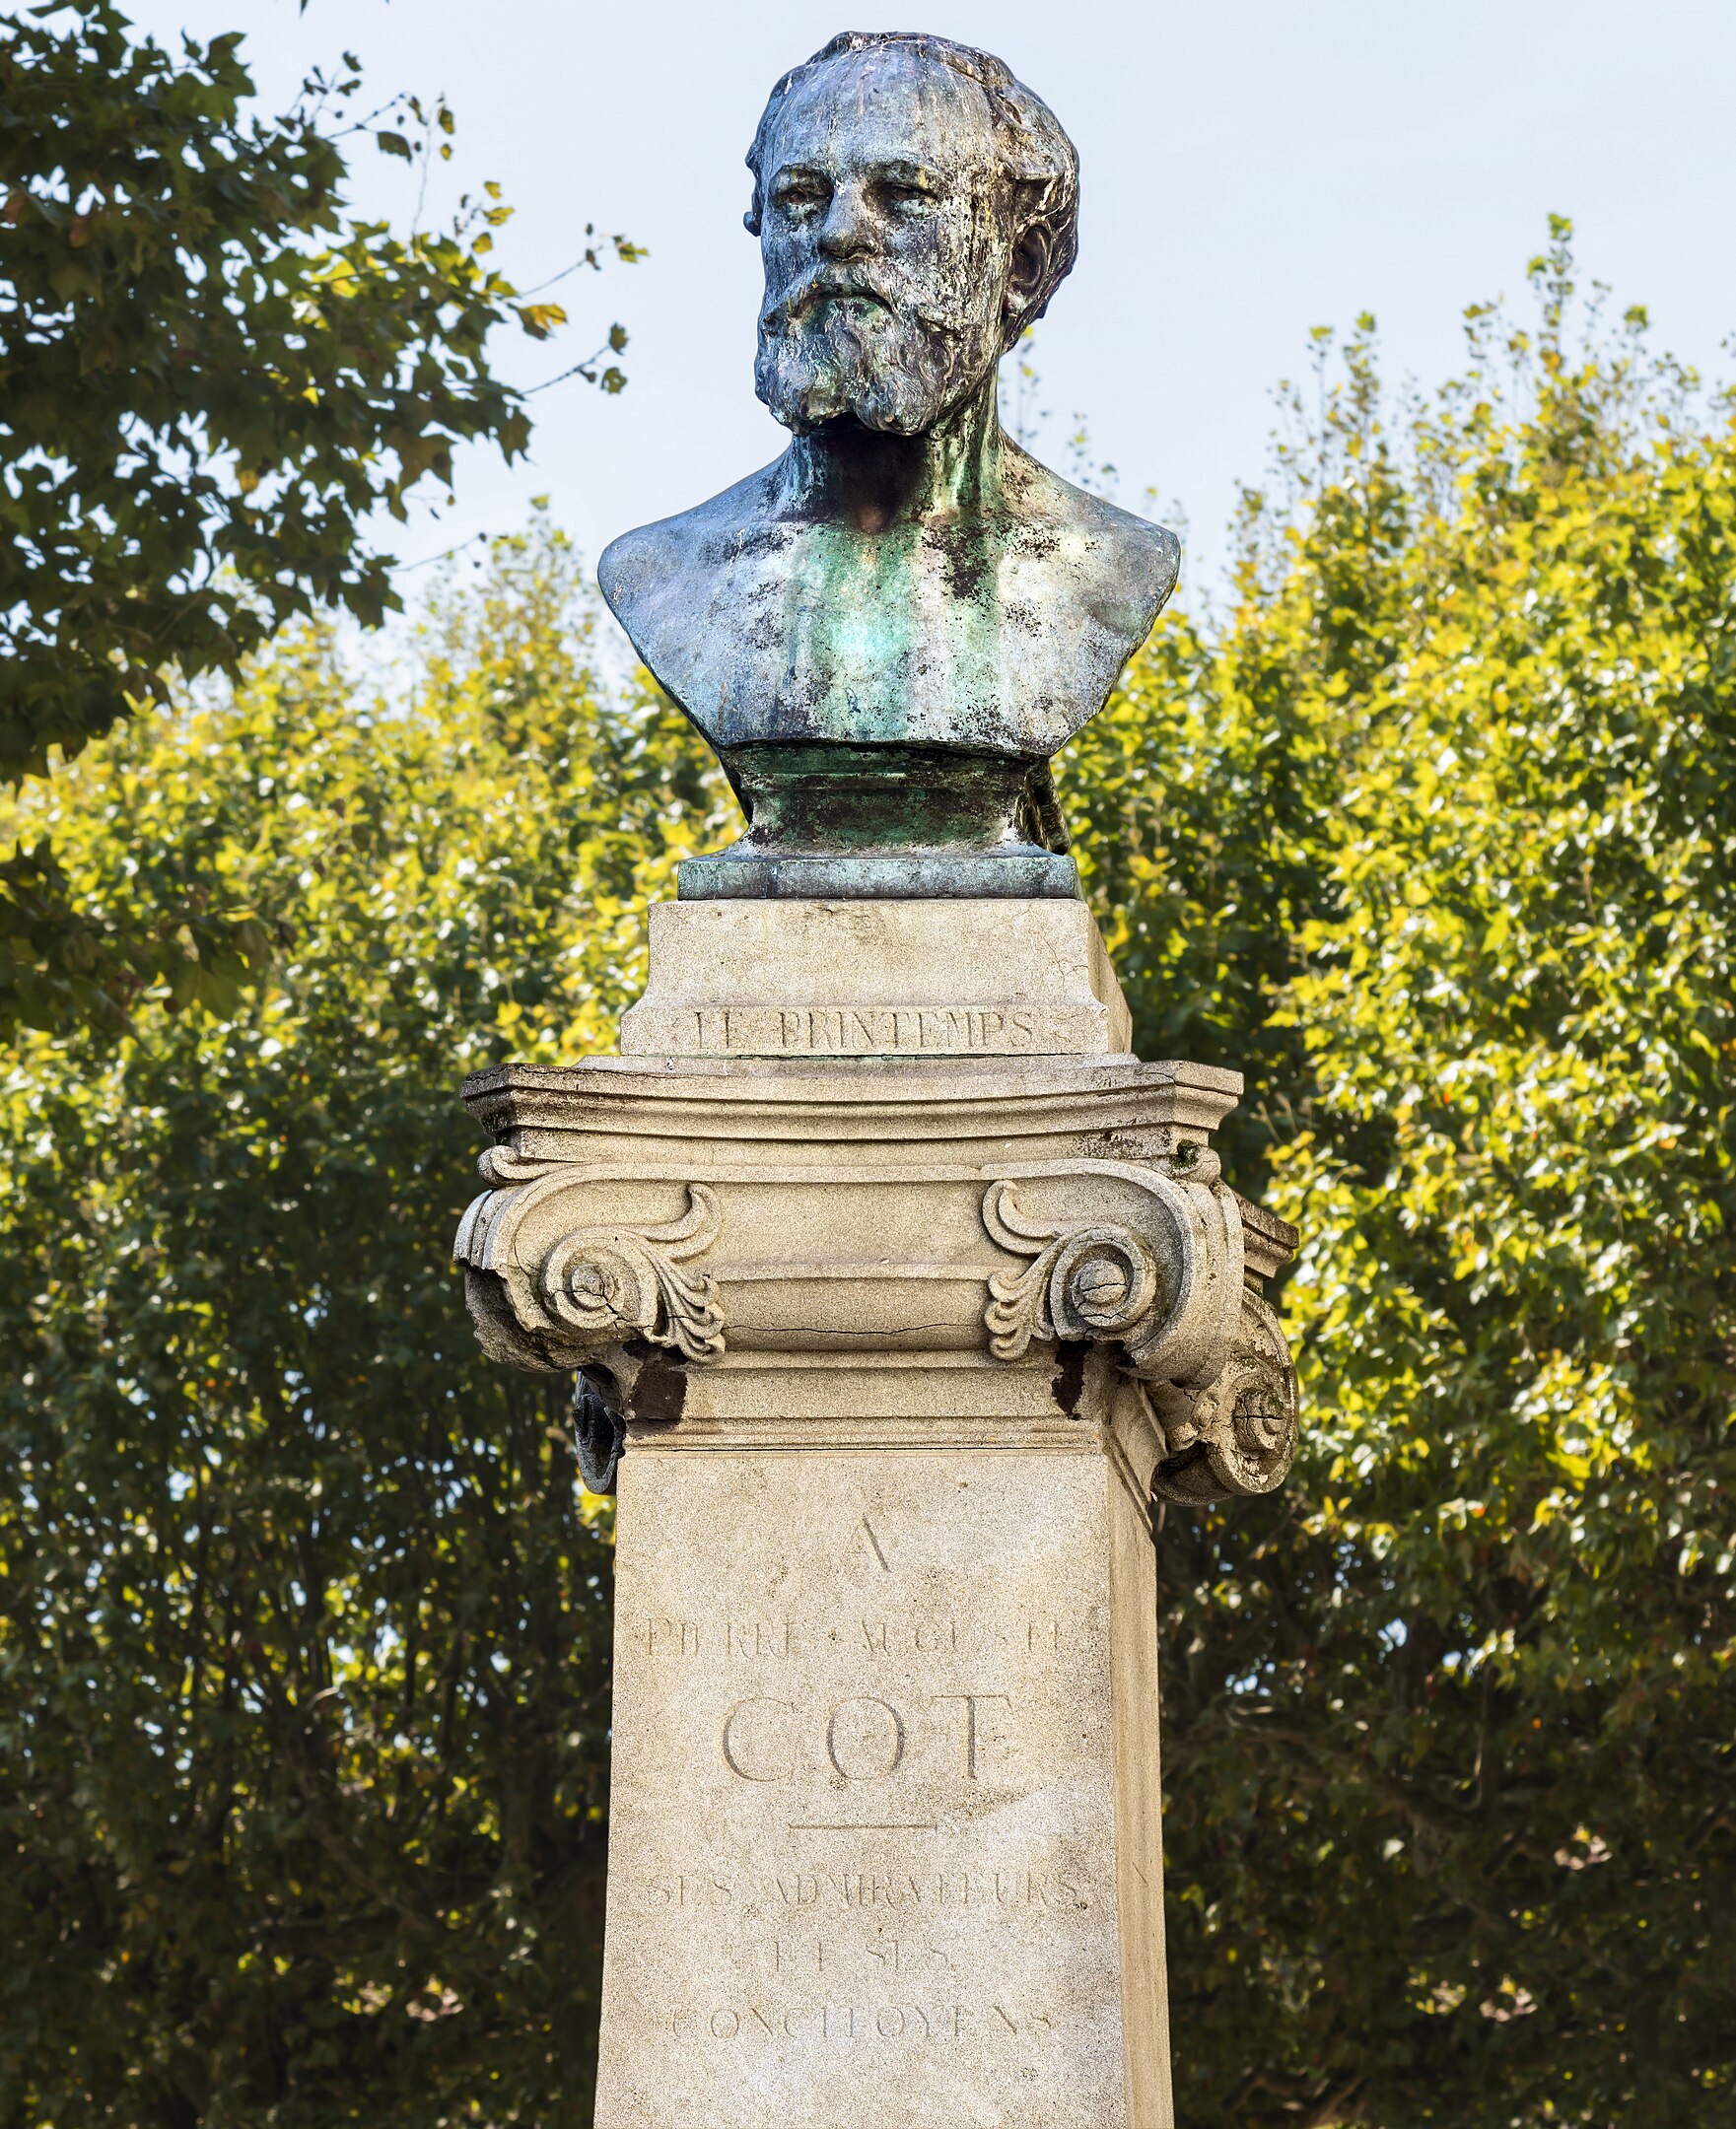 Pierre Auguste Cot - 17 février 1837 - 2 août 1883